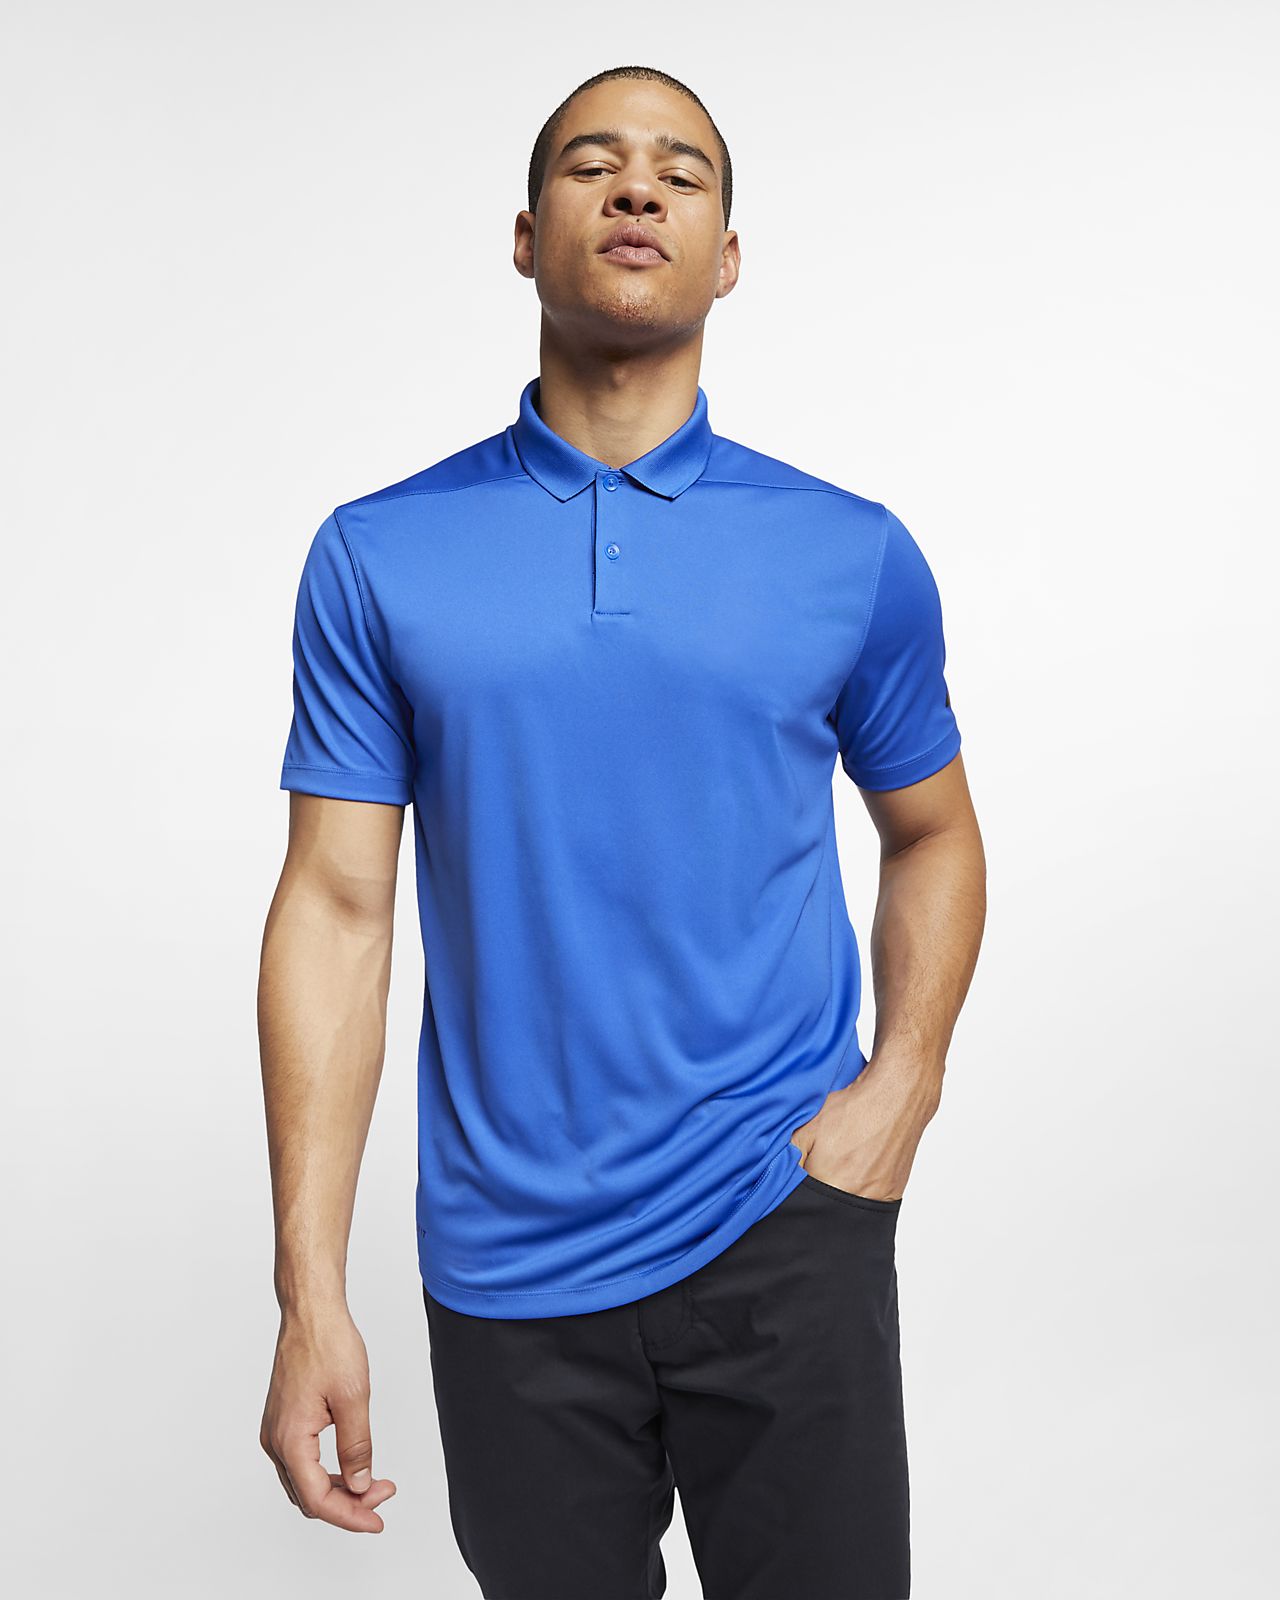 Nike Dri Fit Polo Shirts Size Chart